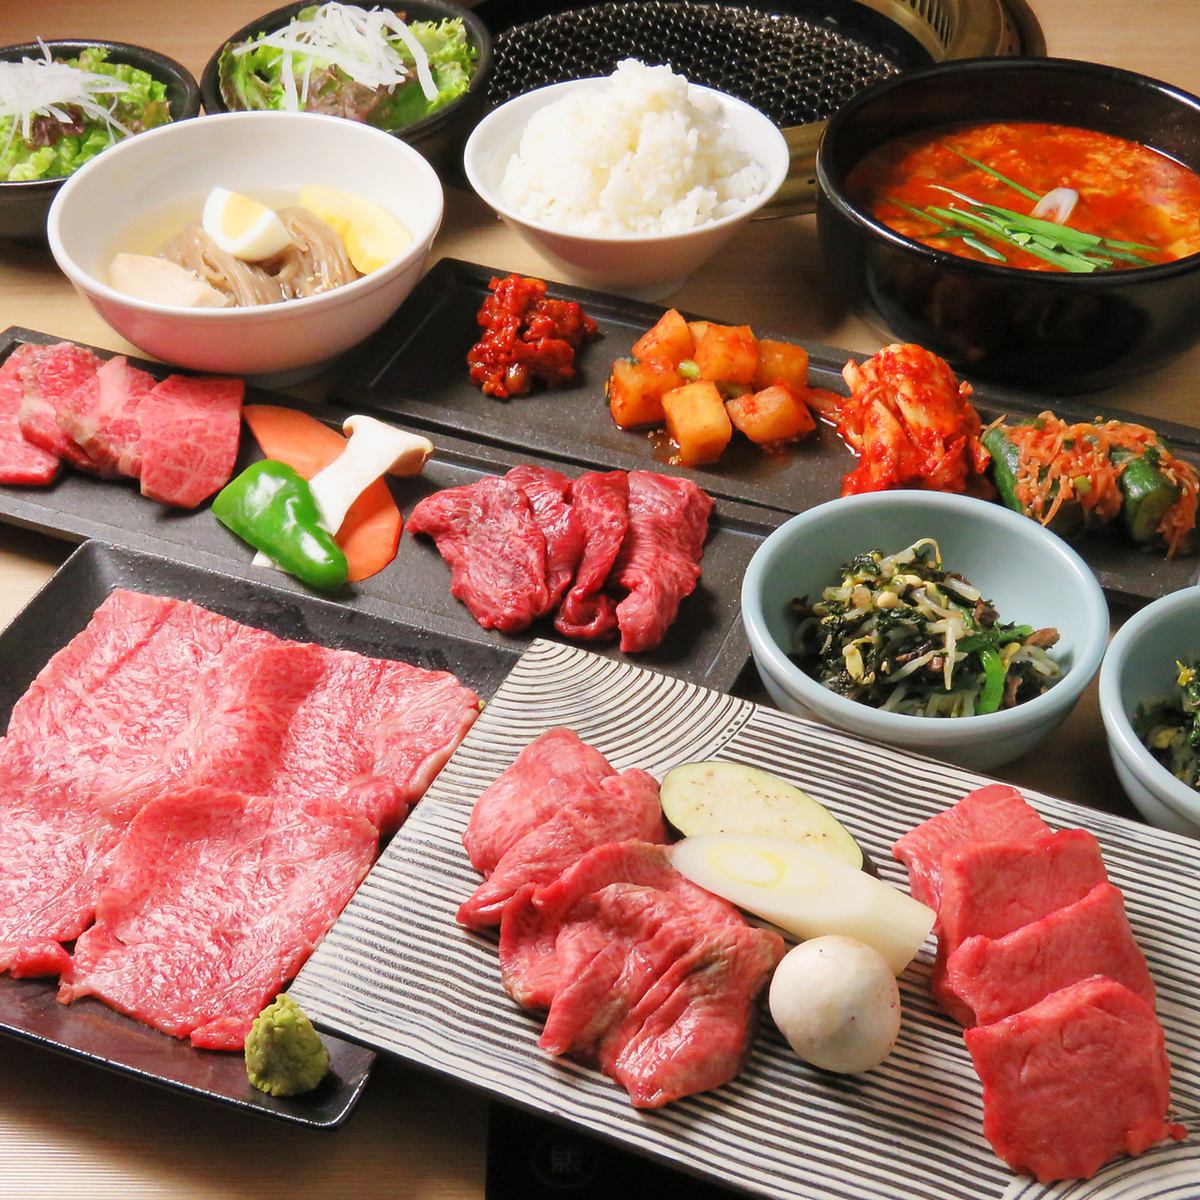 ≪有包间≫请尽情享受我们引以自豪的日本牛肉!请享受我们精美的烤肉。